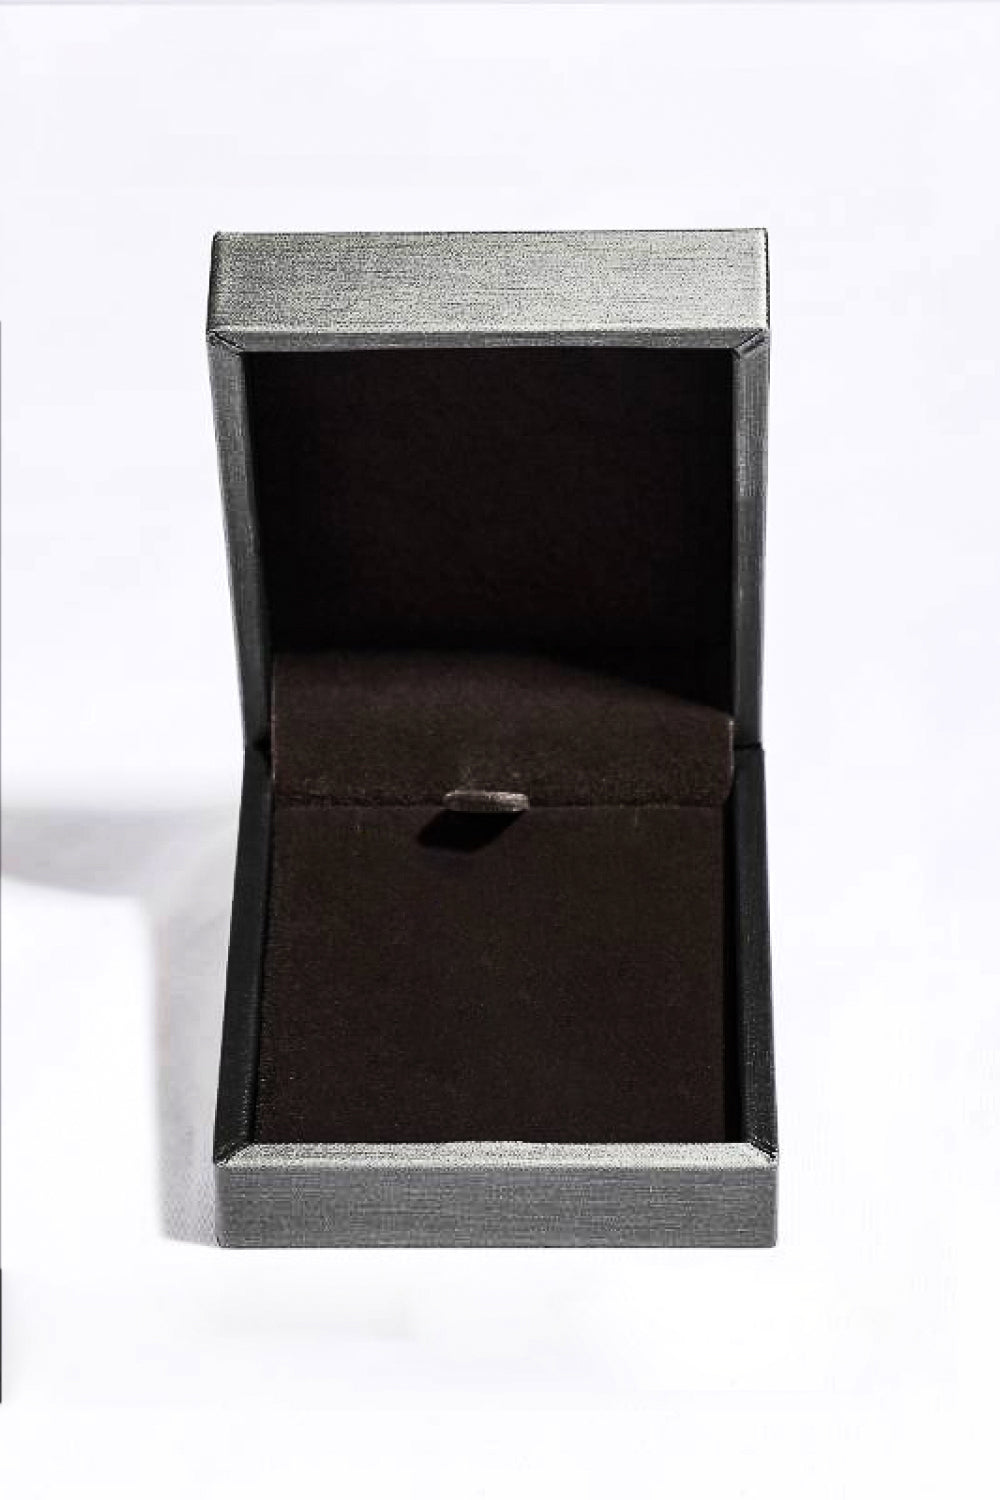 925 Sterling Silver 18K Rose Gold-Plated Pendant Necklace - DromedarShop.com Online Boutique